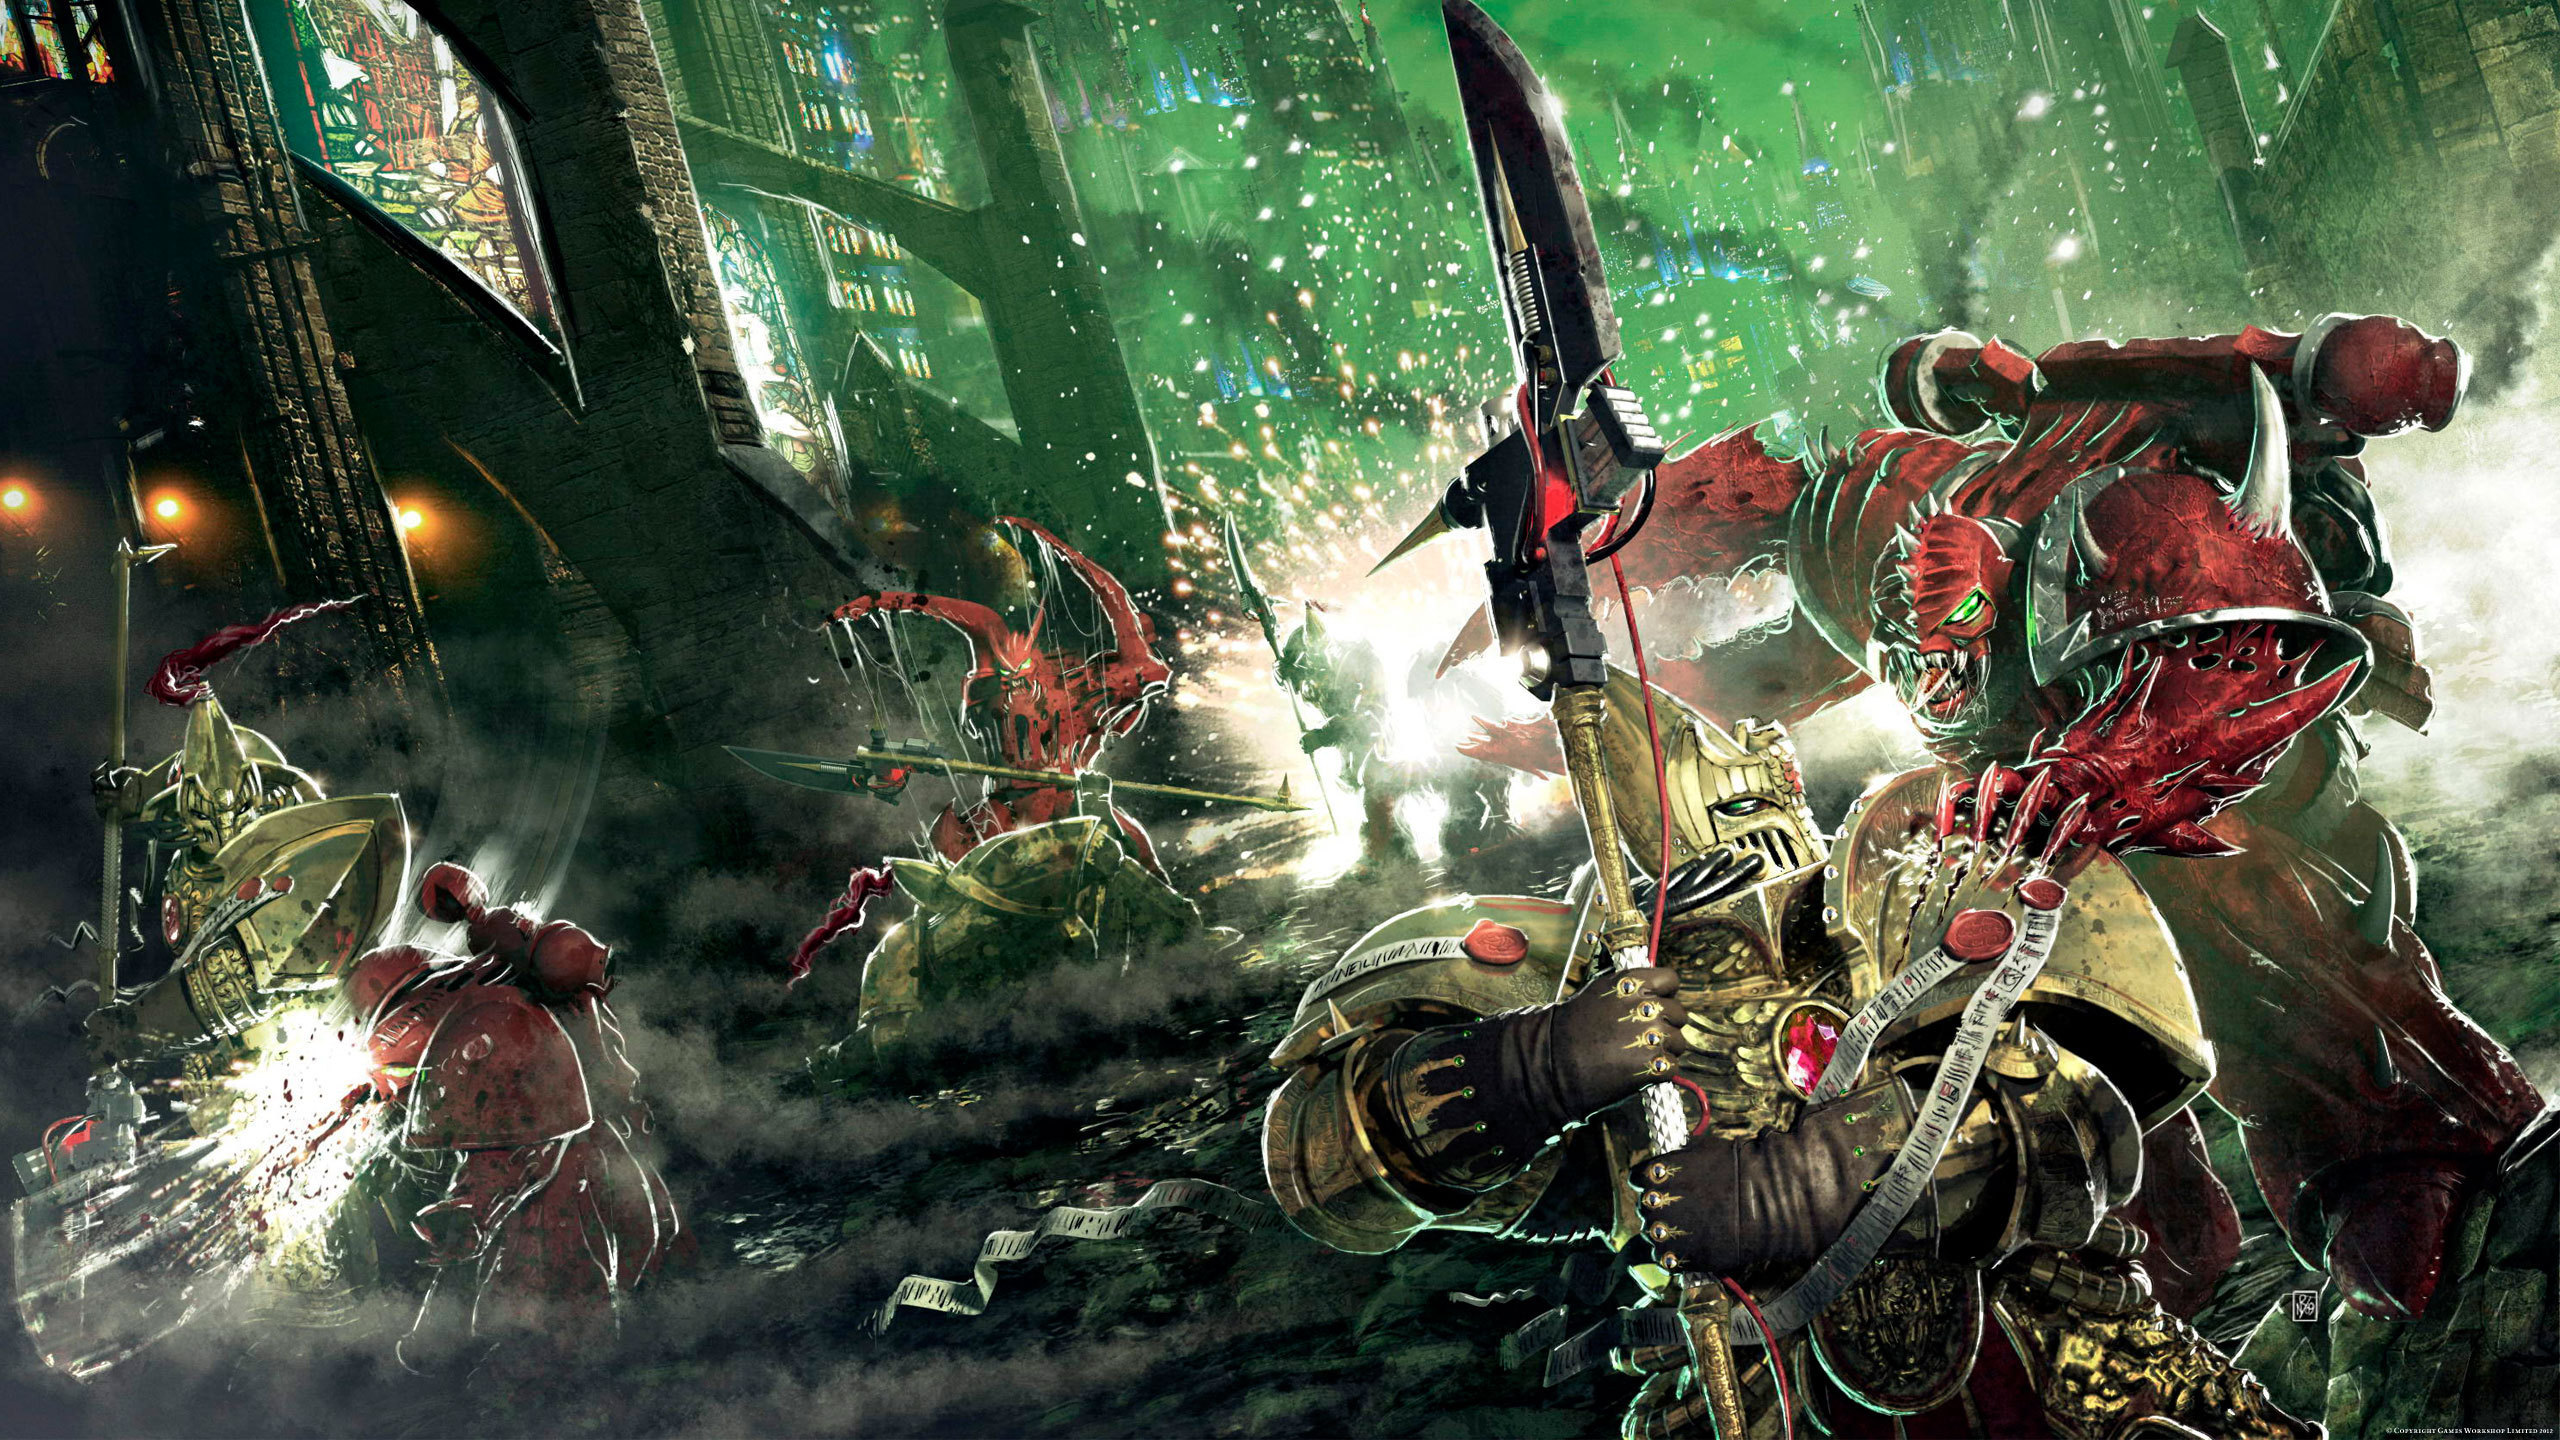 warhammer 40k fondo de pantalla,juego de acción y aventura,juego de pc,juego de disparos,cg artwork,juegos